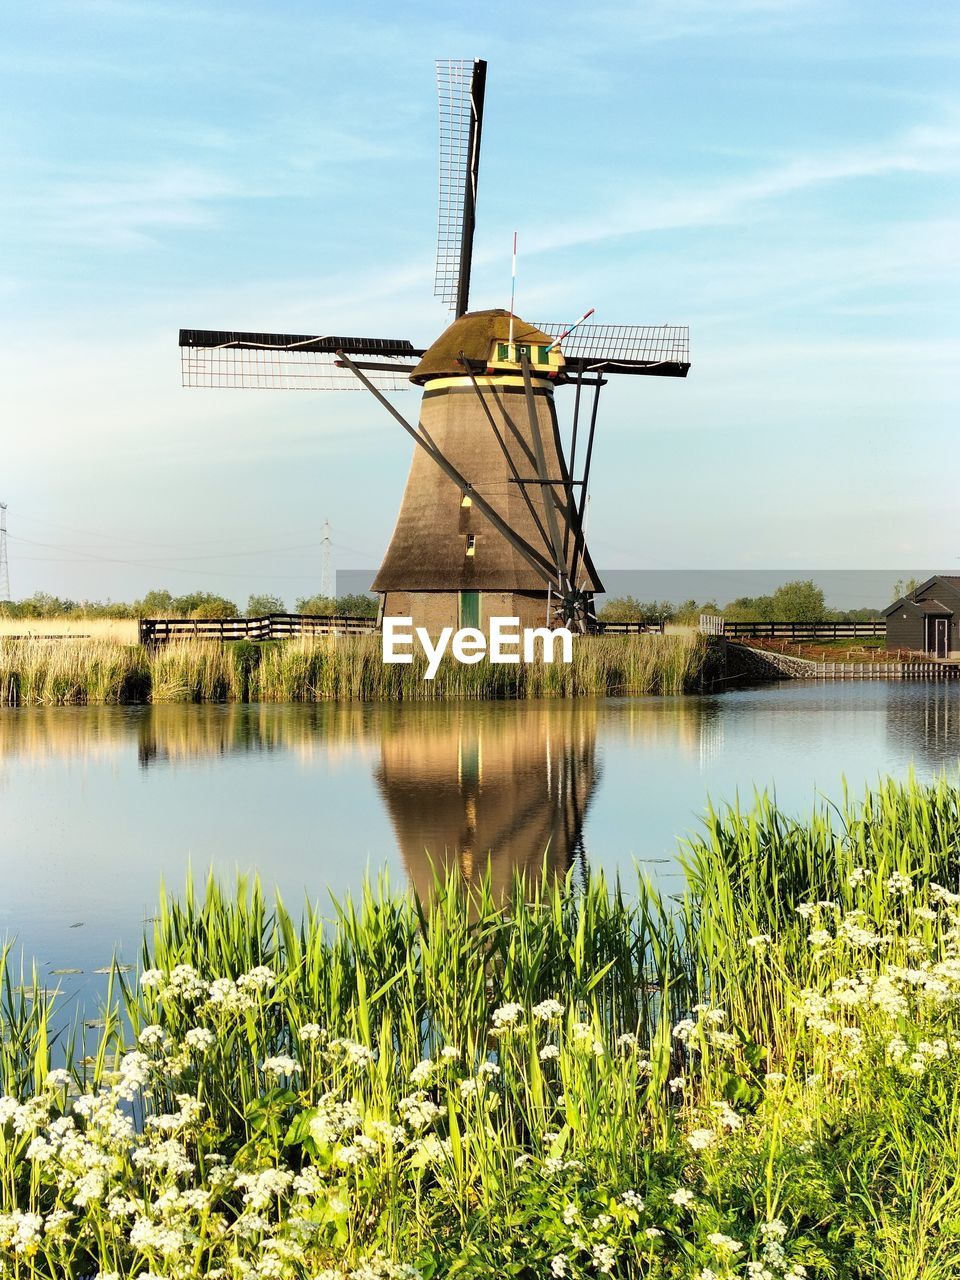 Rotterdam's windmill